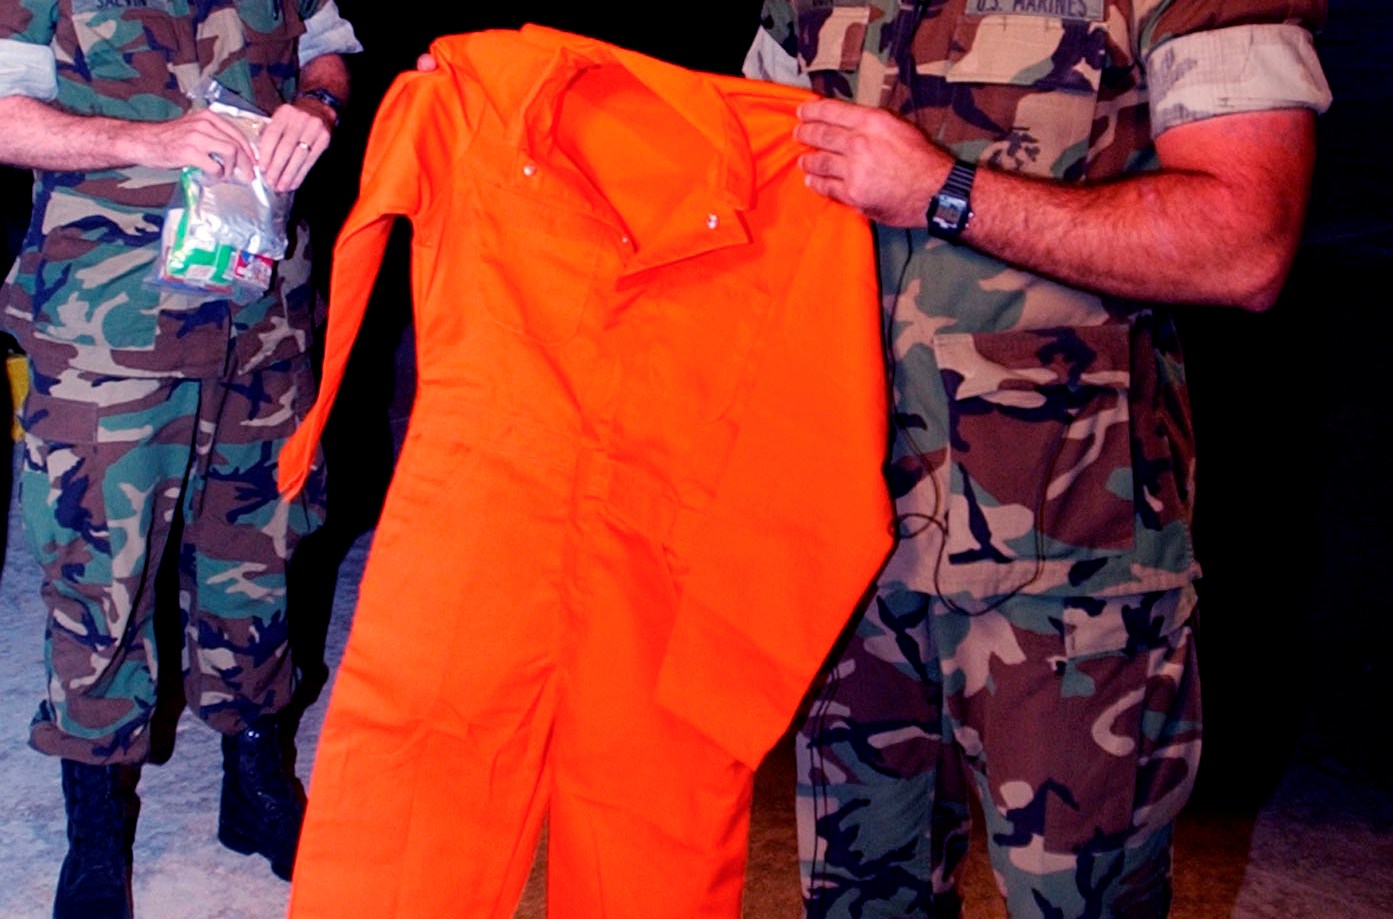 Den 11 januari 2002  visades den orangea overallen upp offentligt, som kom att bli synonymt med Guantanamofängelset. 